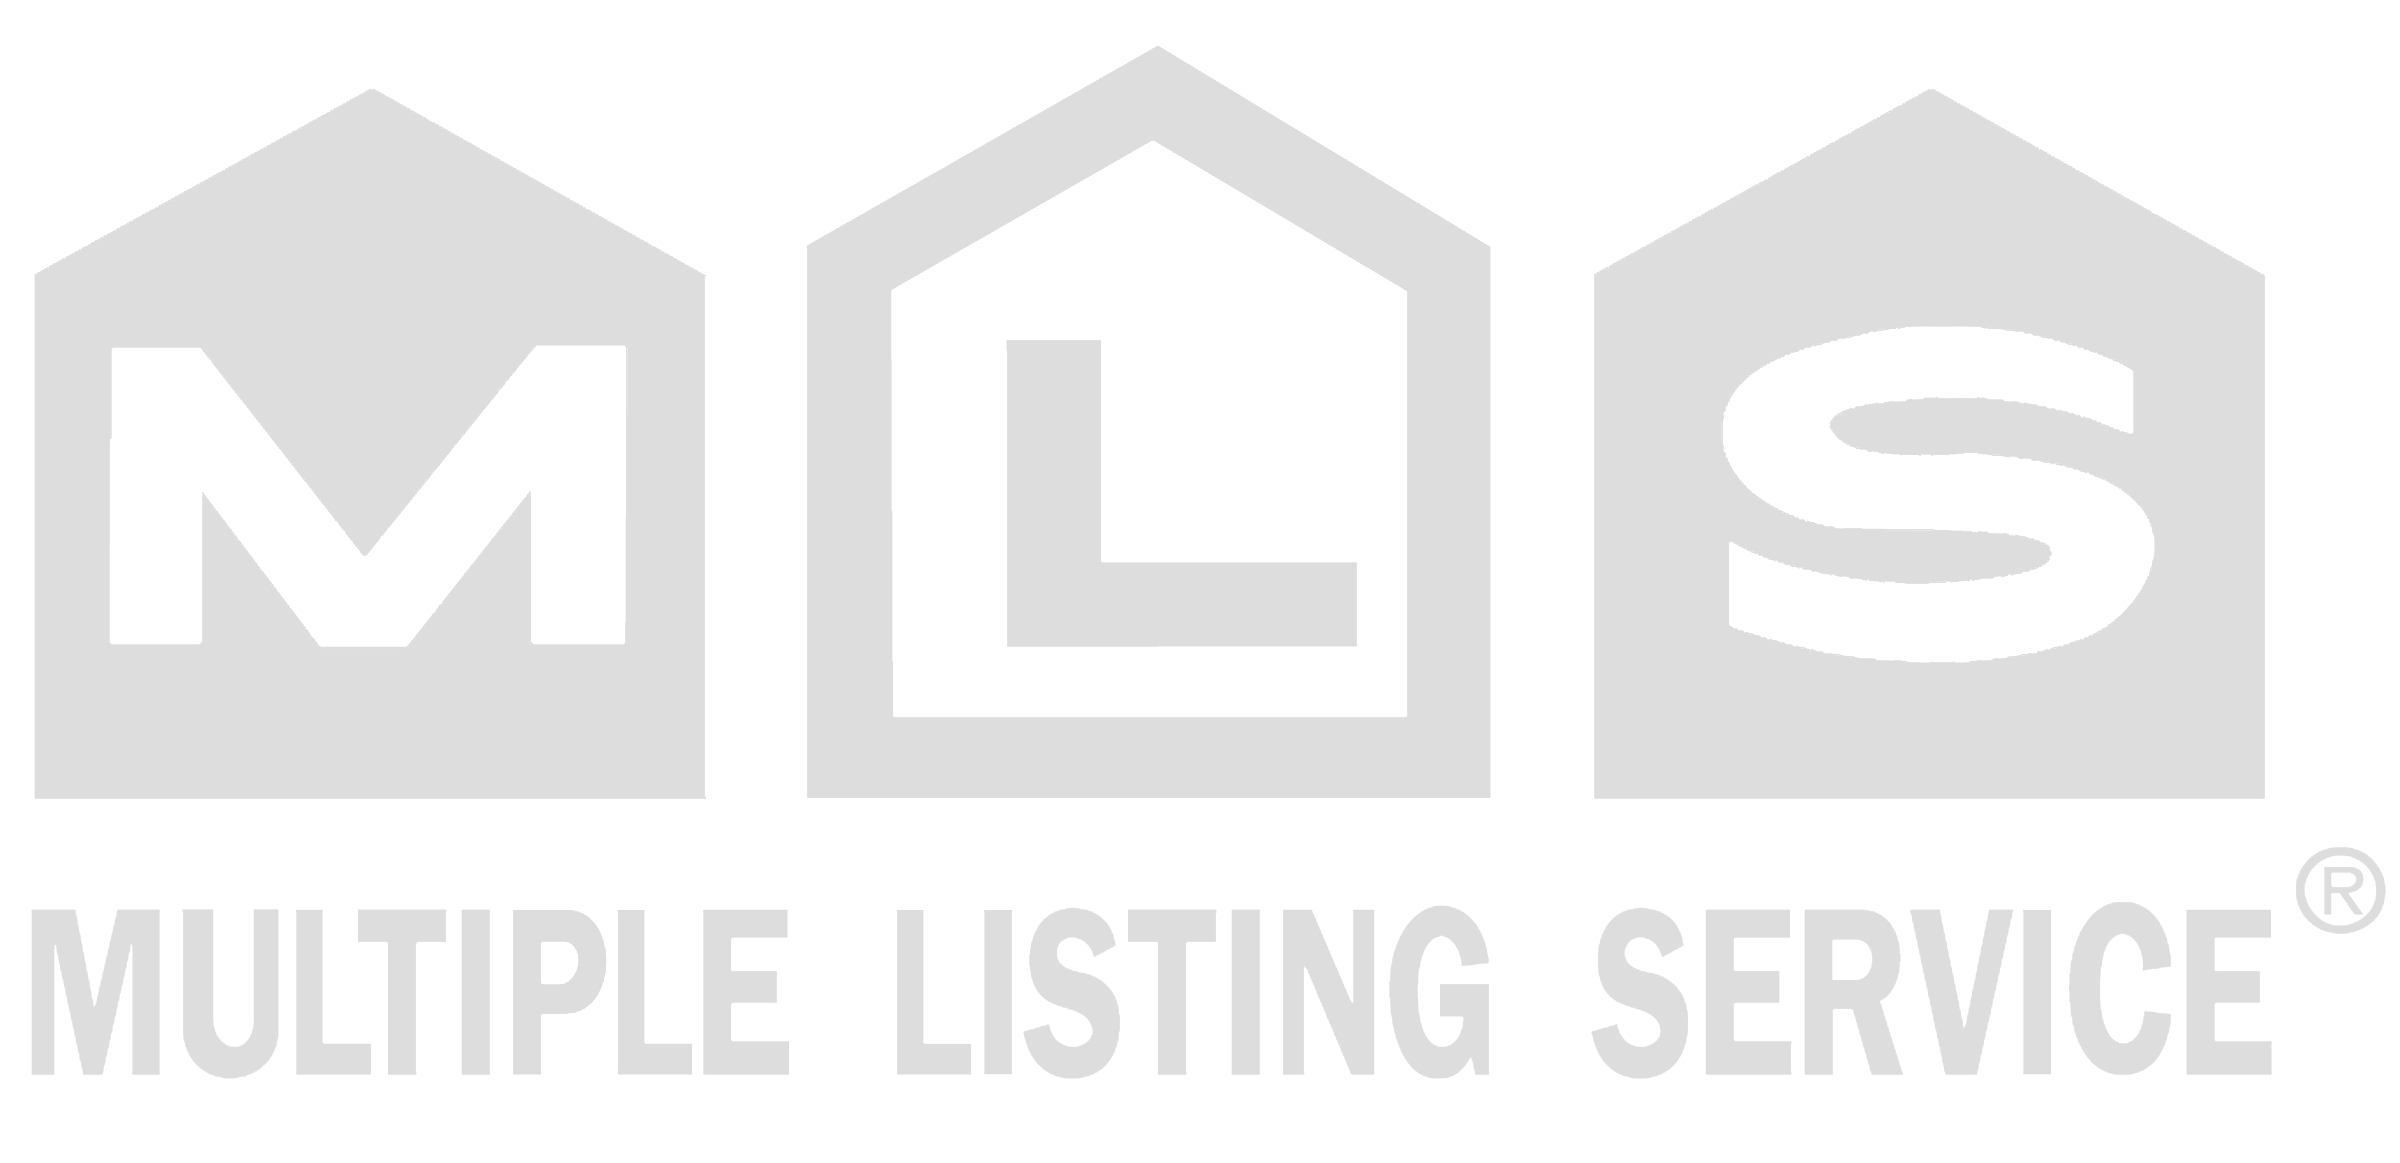 Real Estate MLS Logo - Realtor Mls Png Logo - Free Transparent PNG Logos